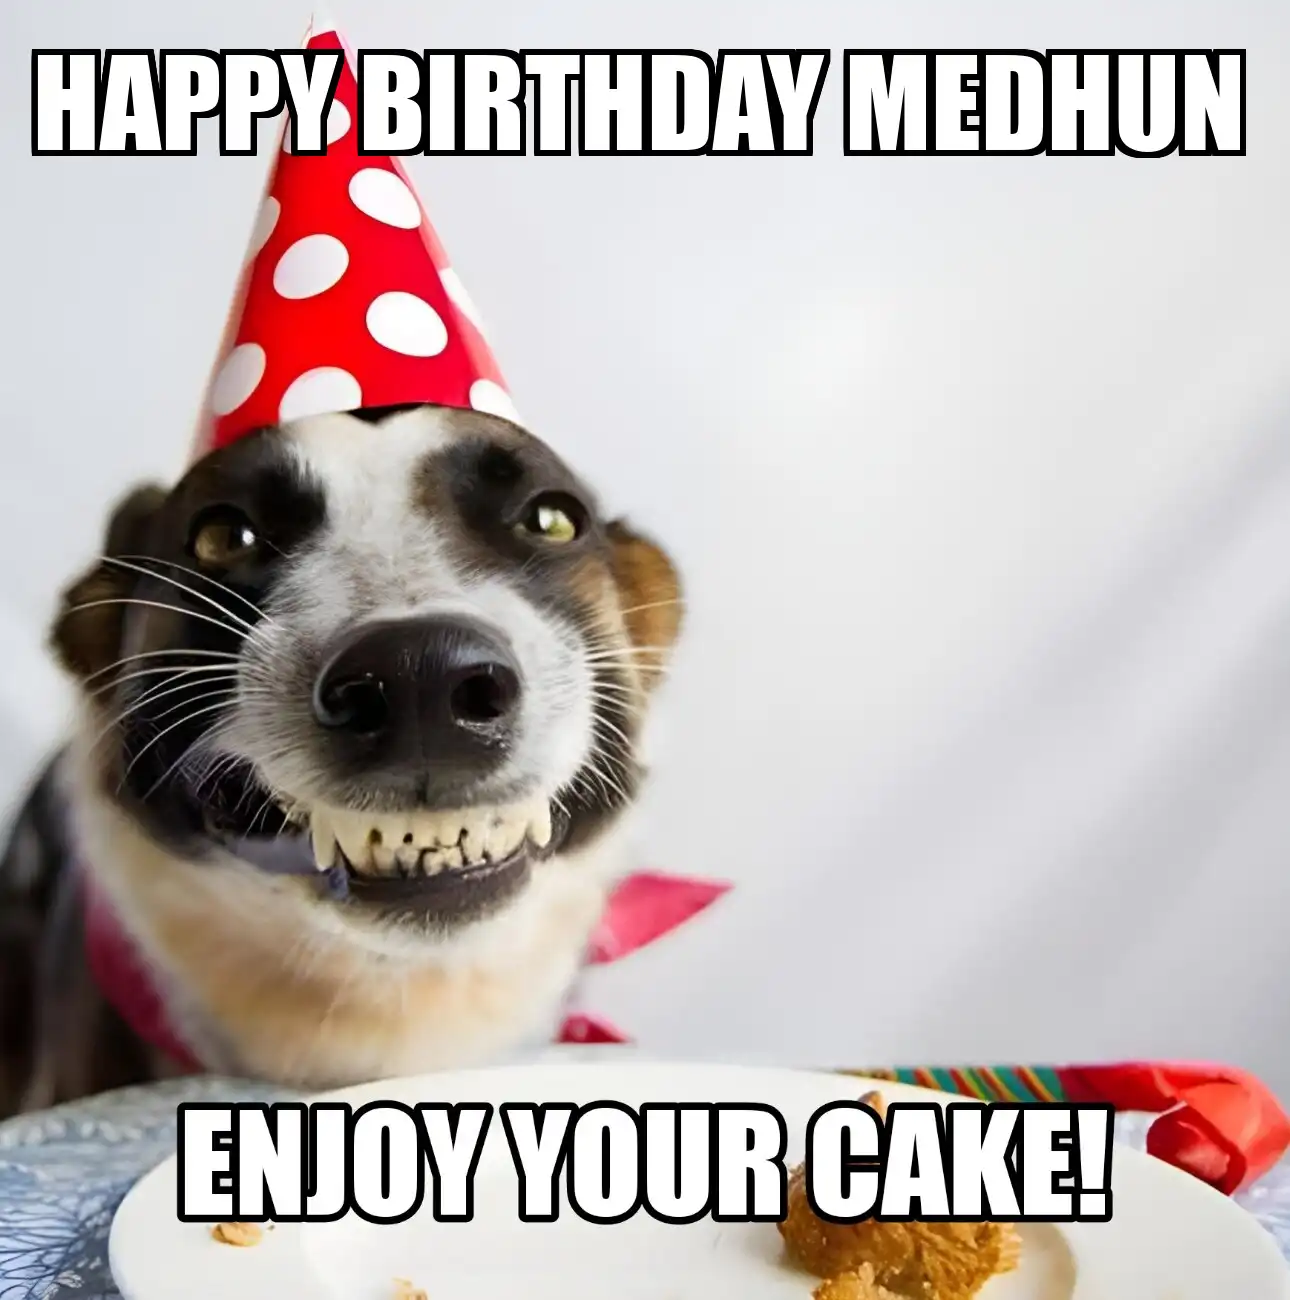 Happy Birthday Medhun Enjoy Your Cake Dog Meme